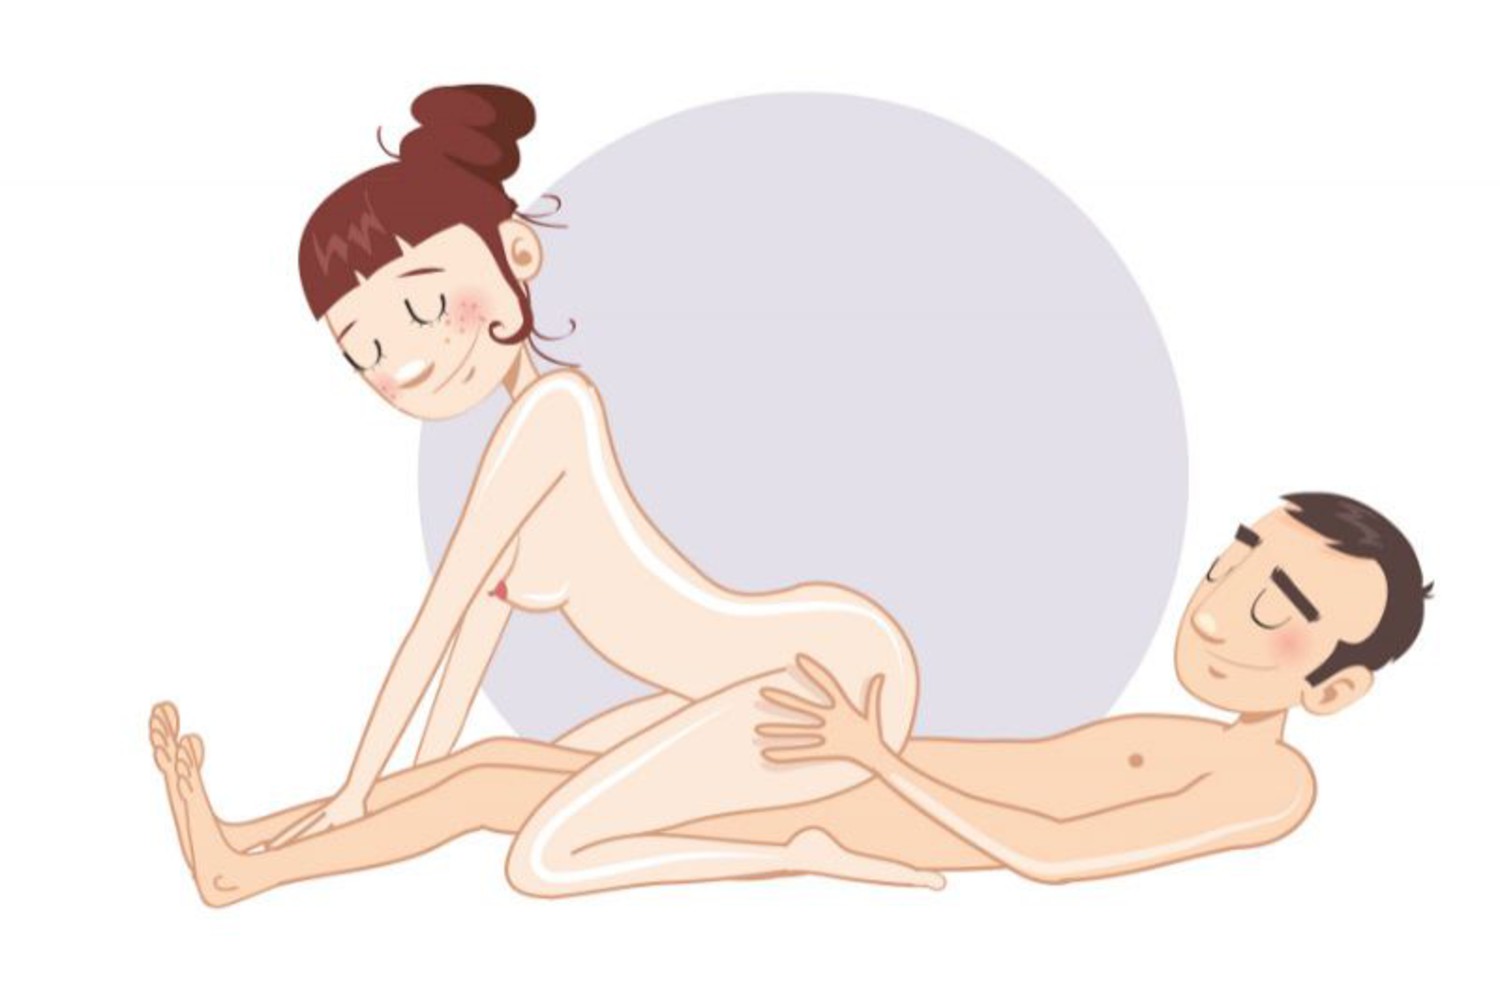 Sex position secrets